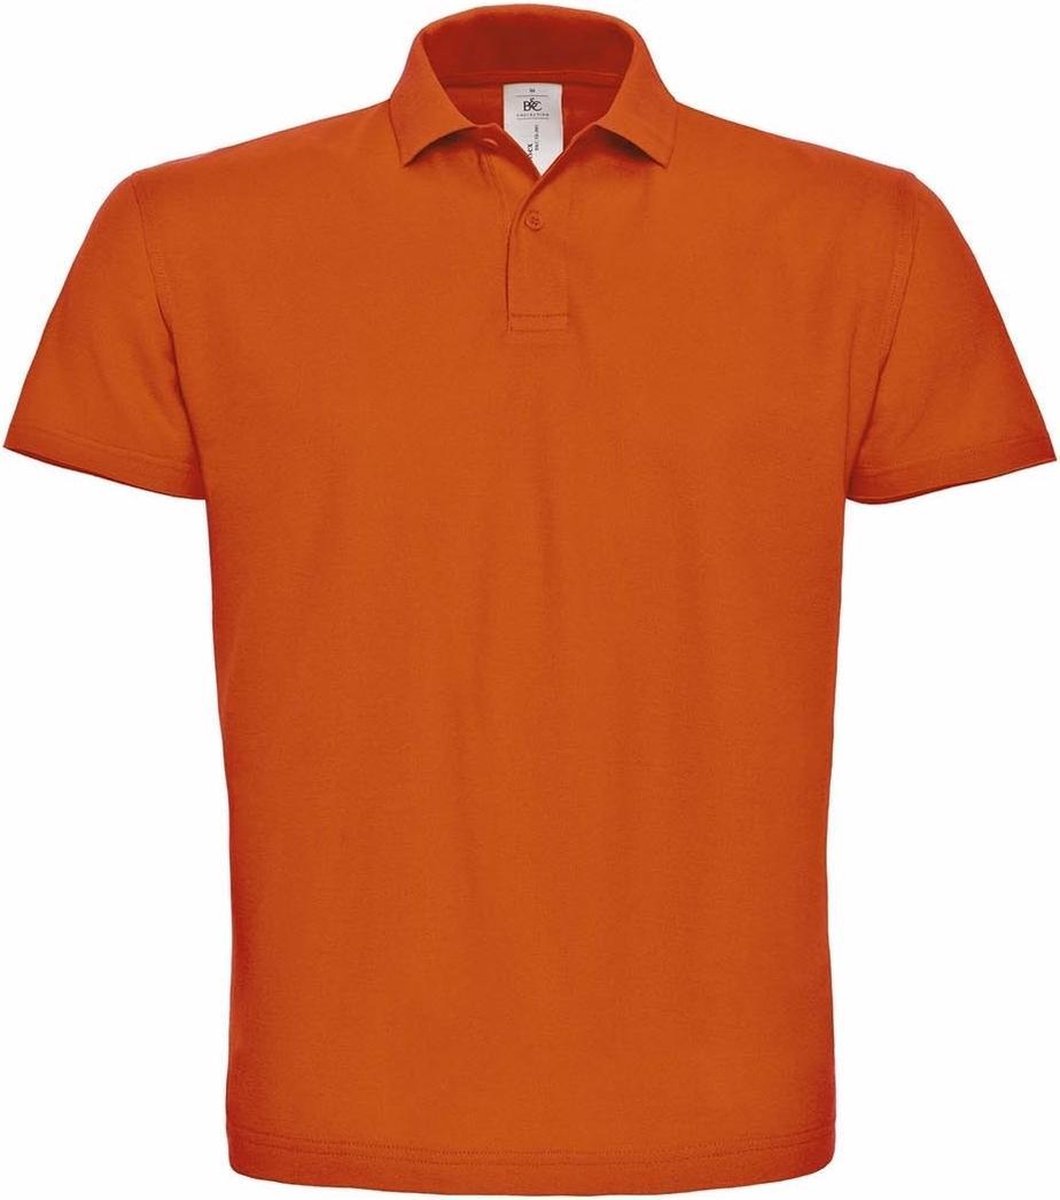 Oranje poloshirt basic van katoen voor heren - katoen - 180 grams - polo t-shirts - Koningsdag of EK / WK supporter kleding L (52)